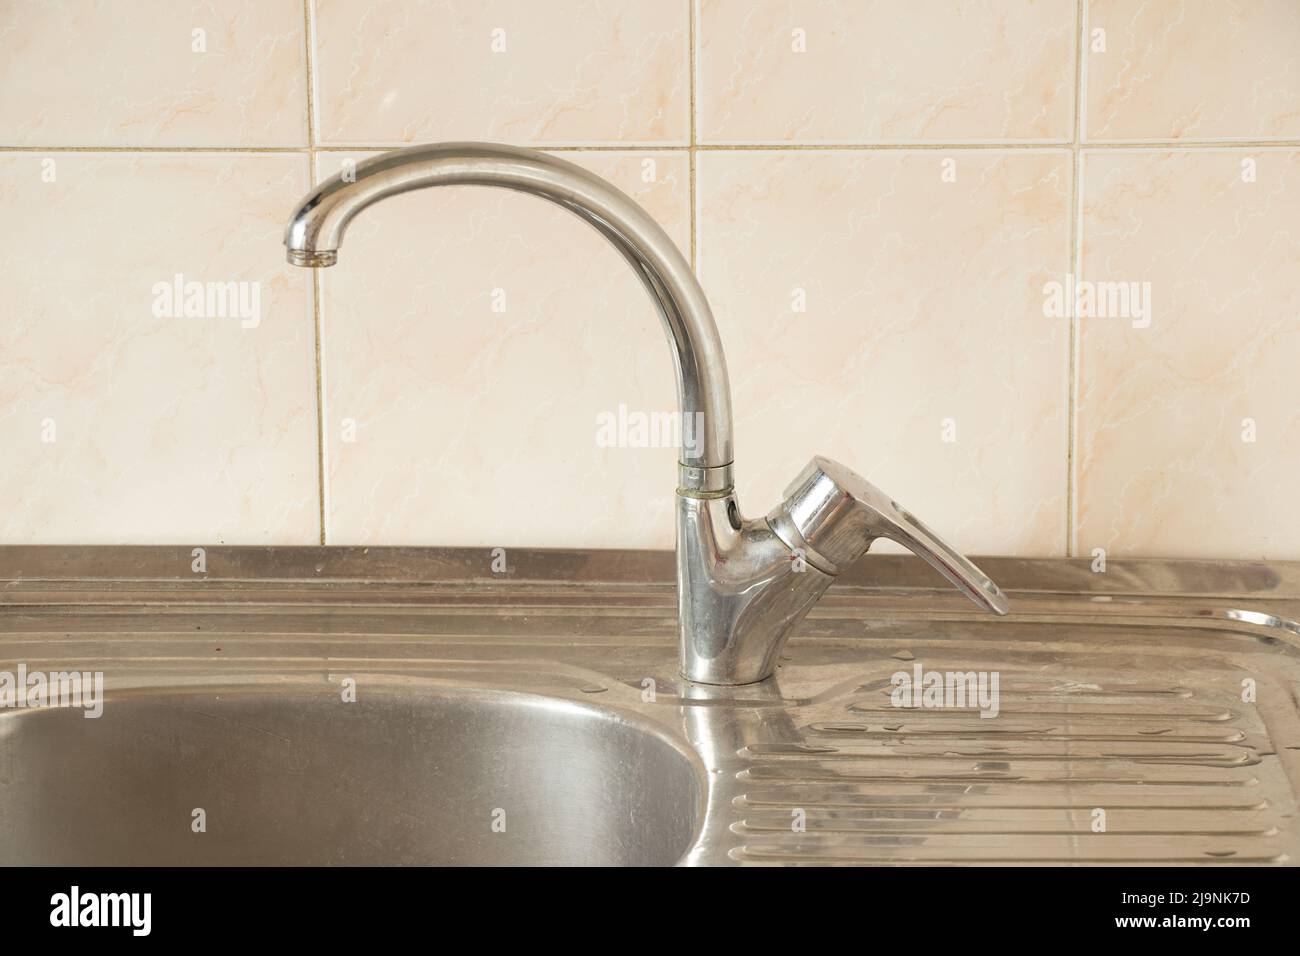 Cucina lavello e rubinetto in cucina in appartamento, rubinetto e rubinetto, impianto idraulico Foto Stock